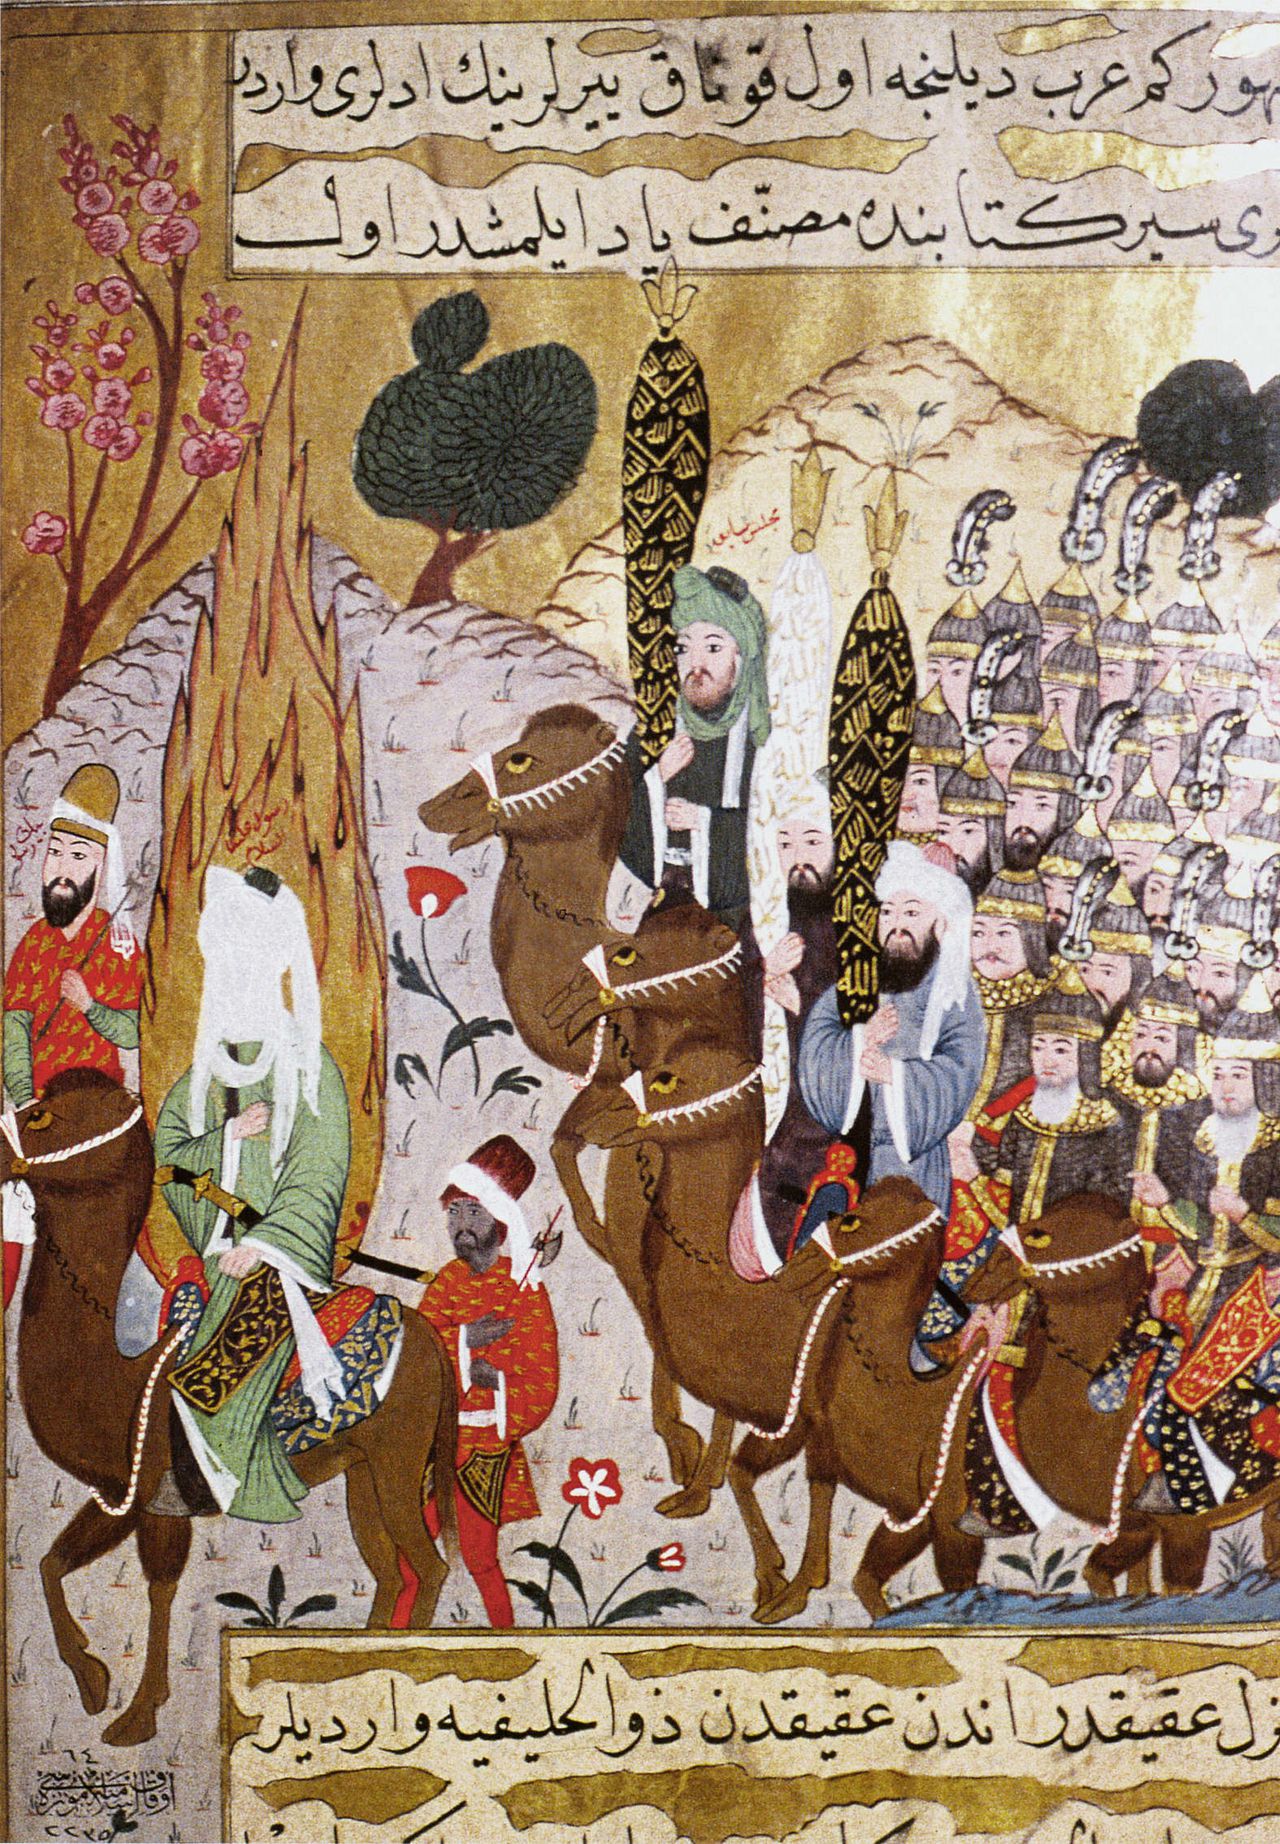 Mohammed trekt naar Mekka met volgelingen, ca. 1550